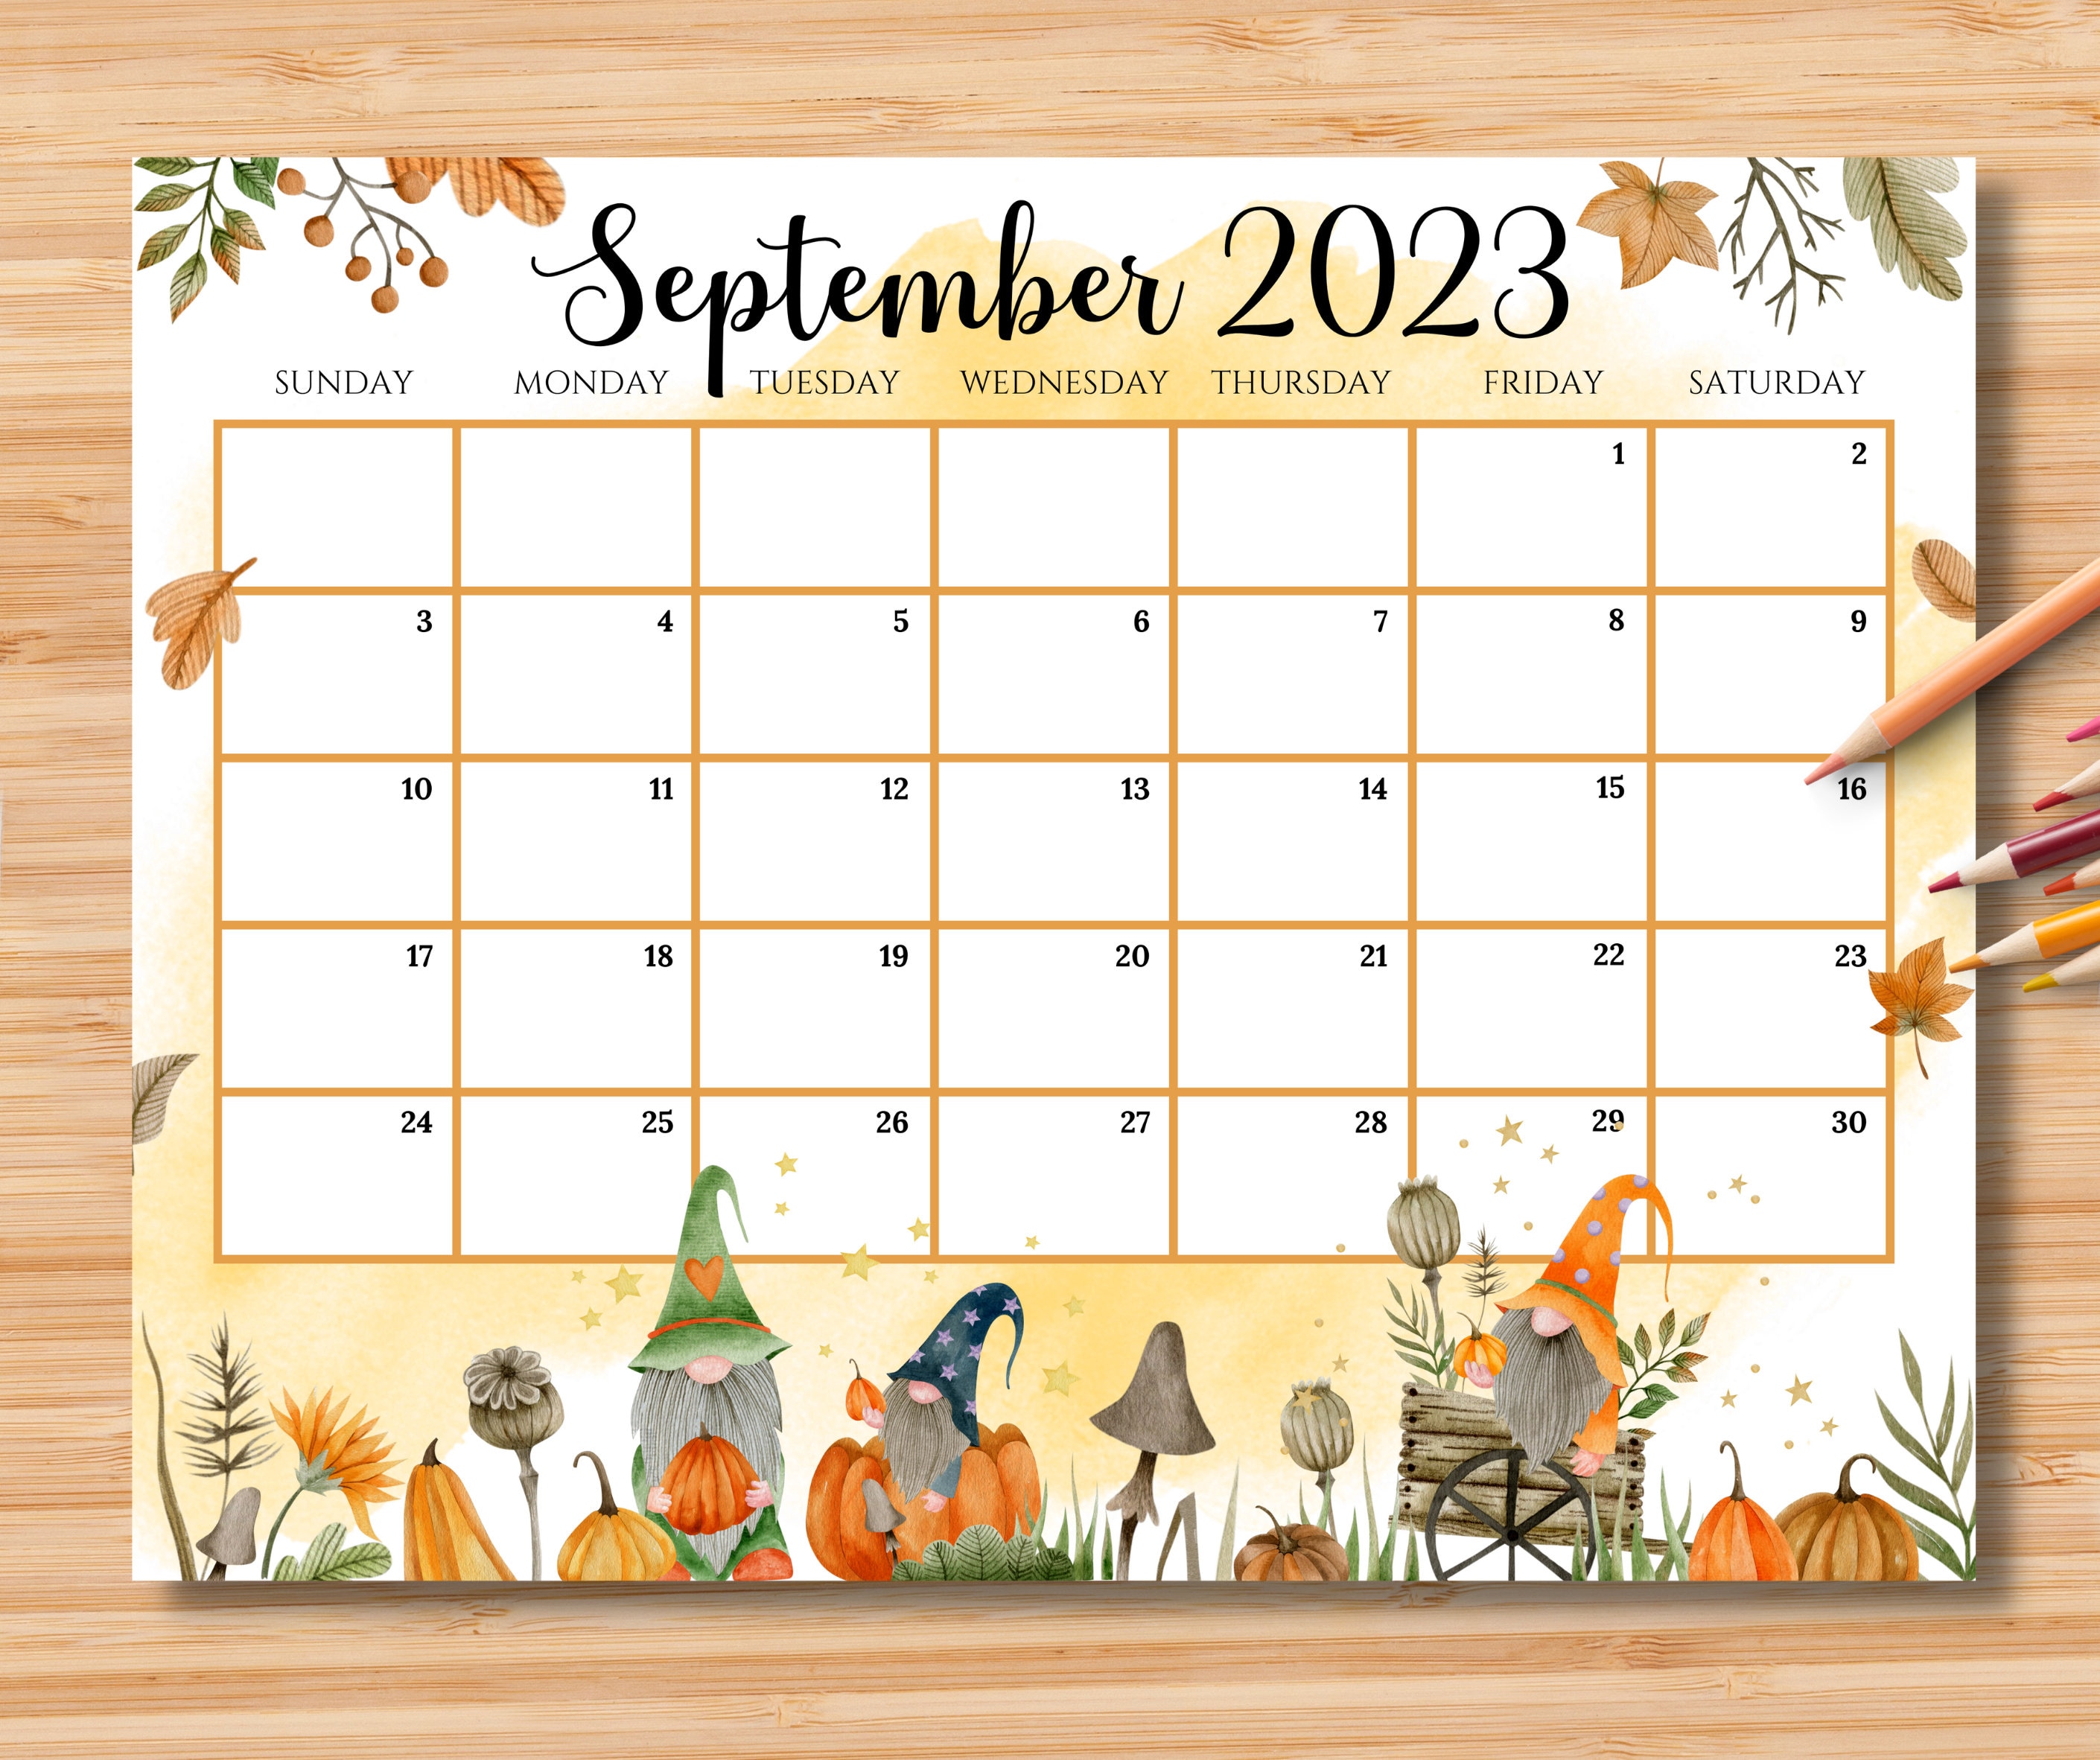 september-2023-calendar-kids-get-calendar-2023-update